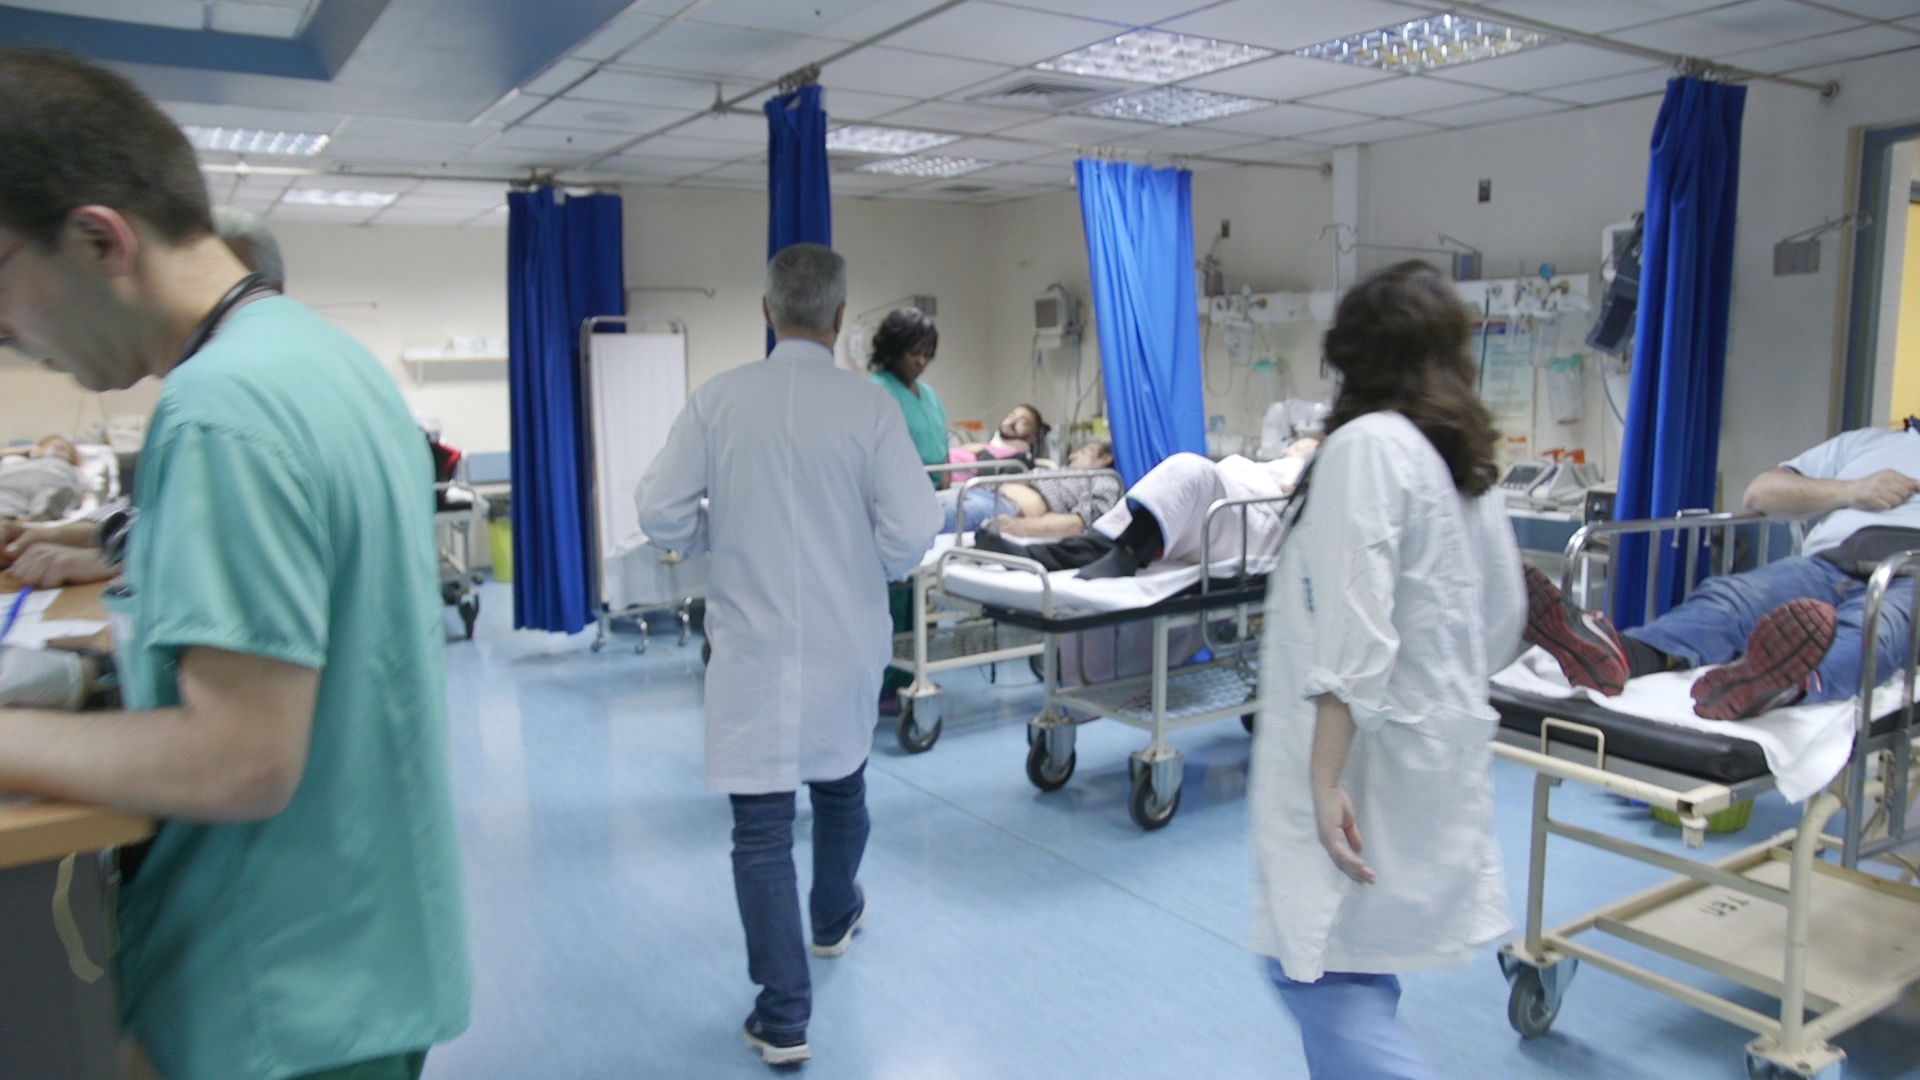 Νοσηλευτές: Ο Υπουργός Υγείας με νομοσχέδιο θα βολέψει φίλους